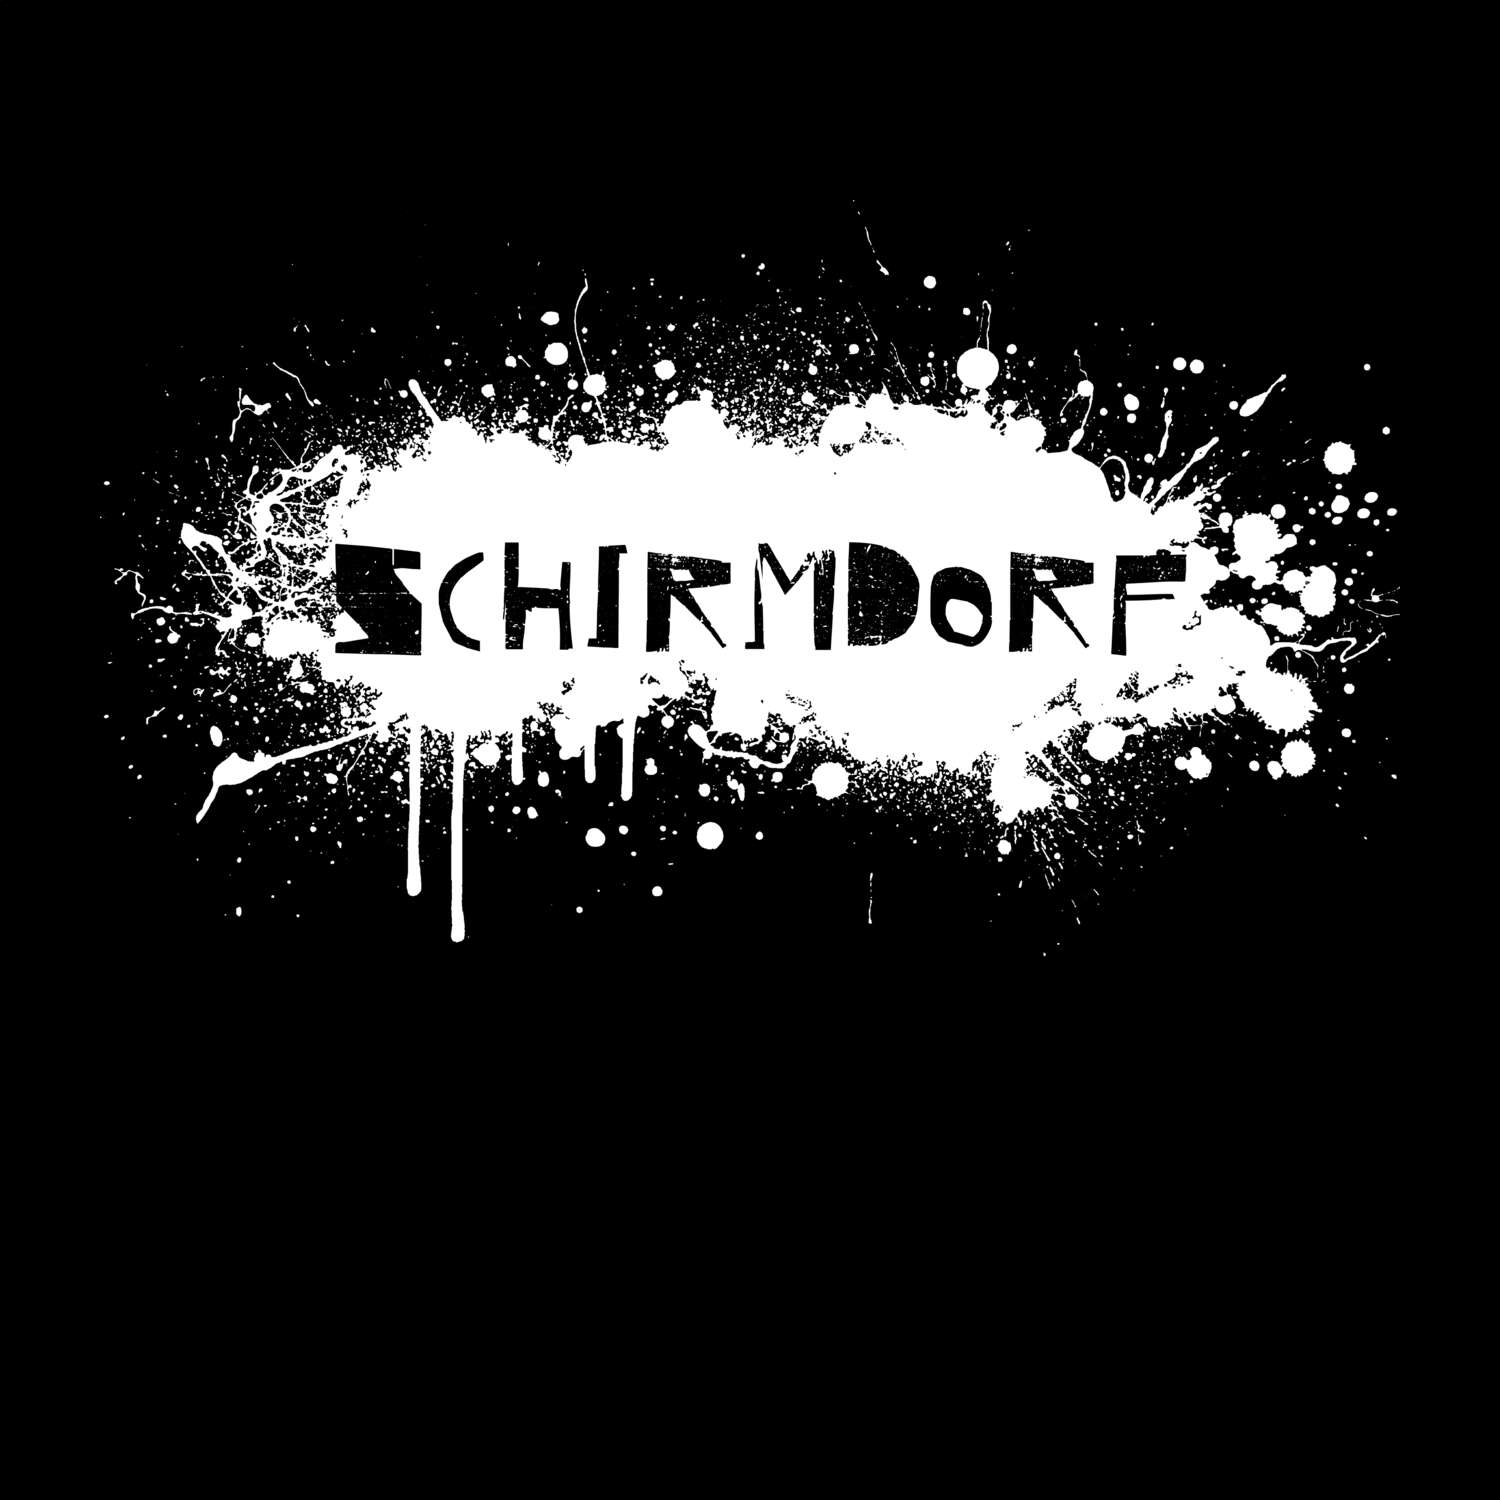 Schirmdorf T-Shirt »Paint Splash Punk«